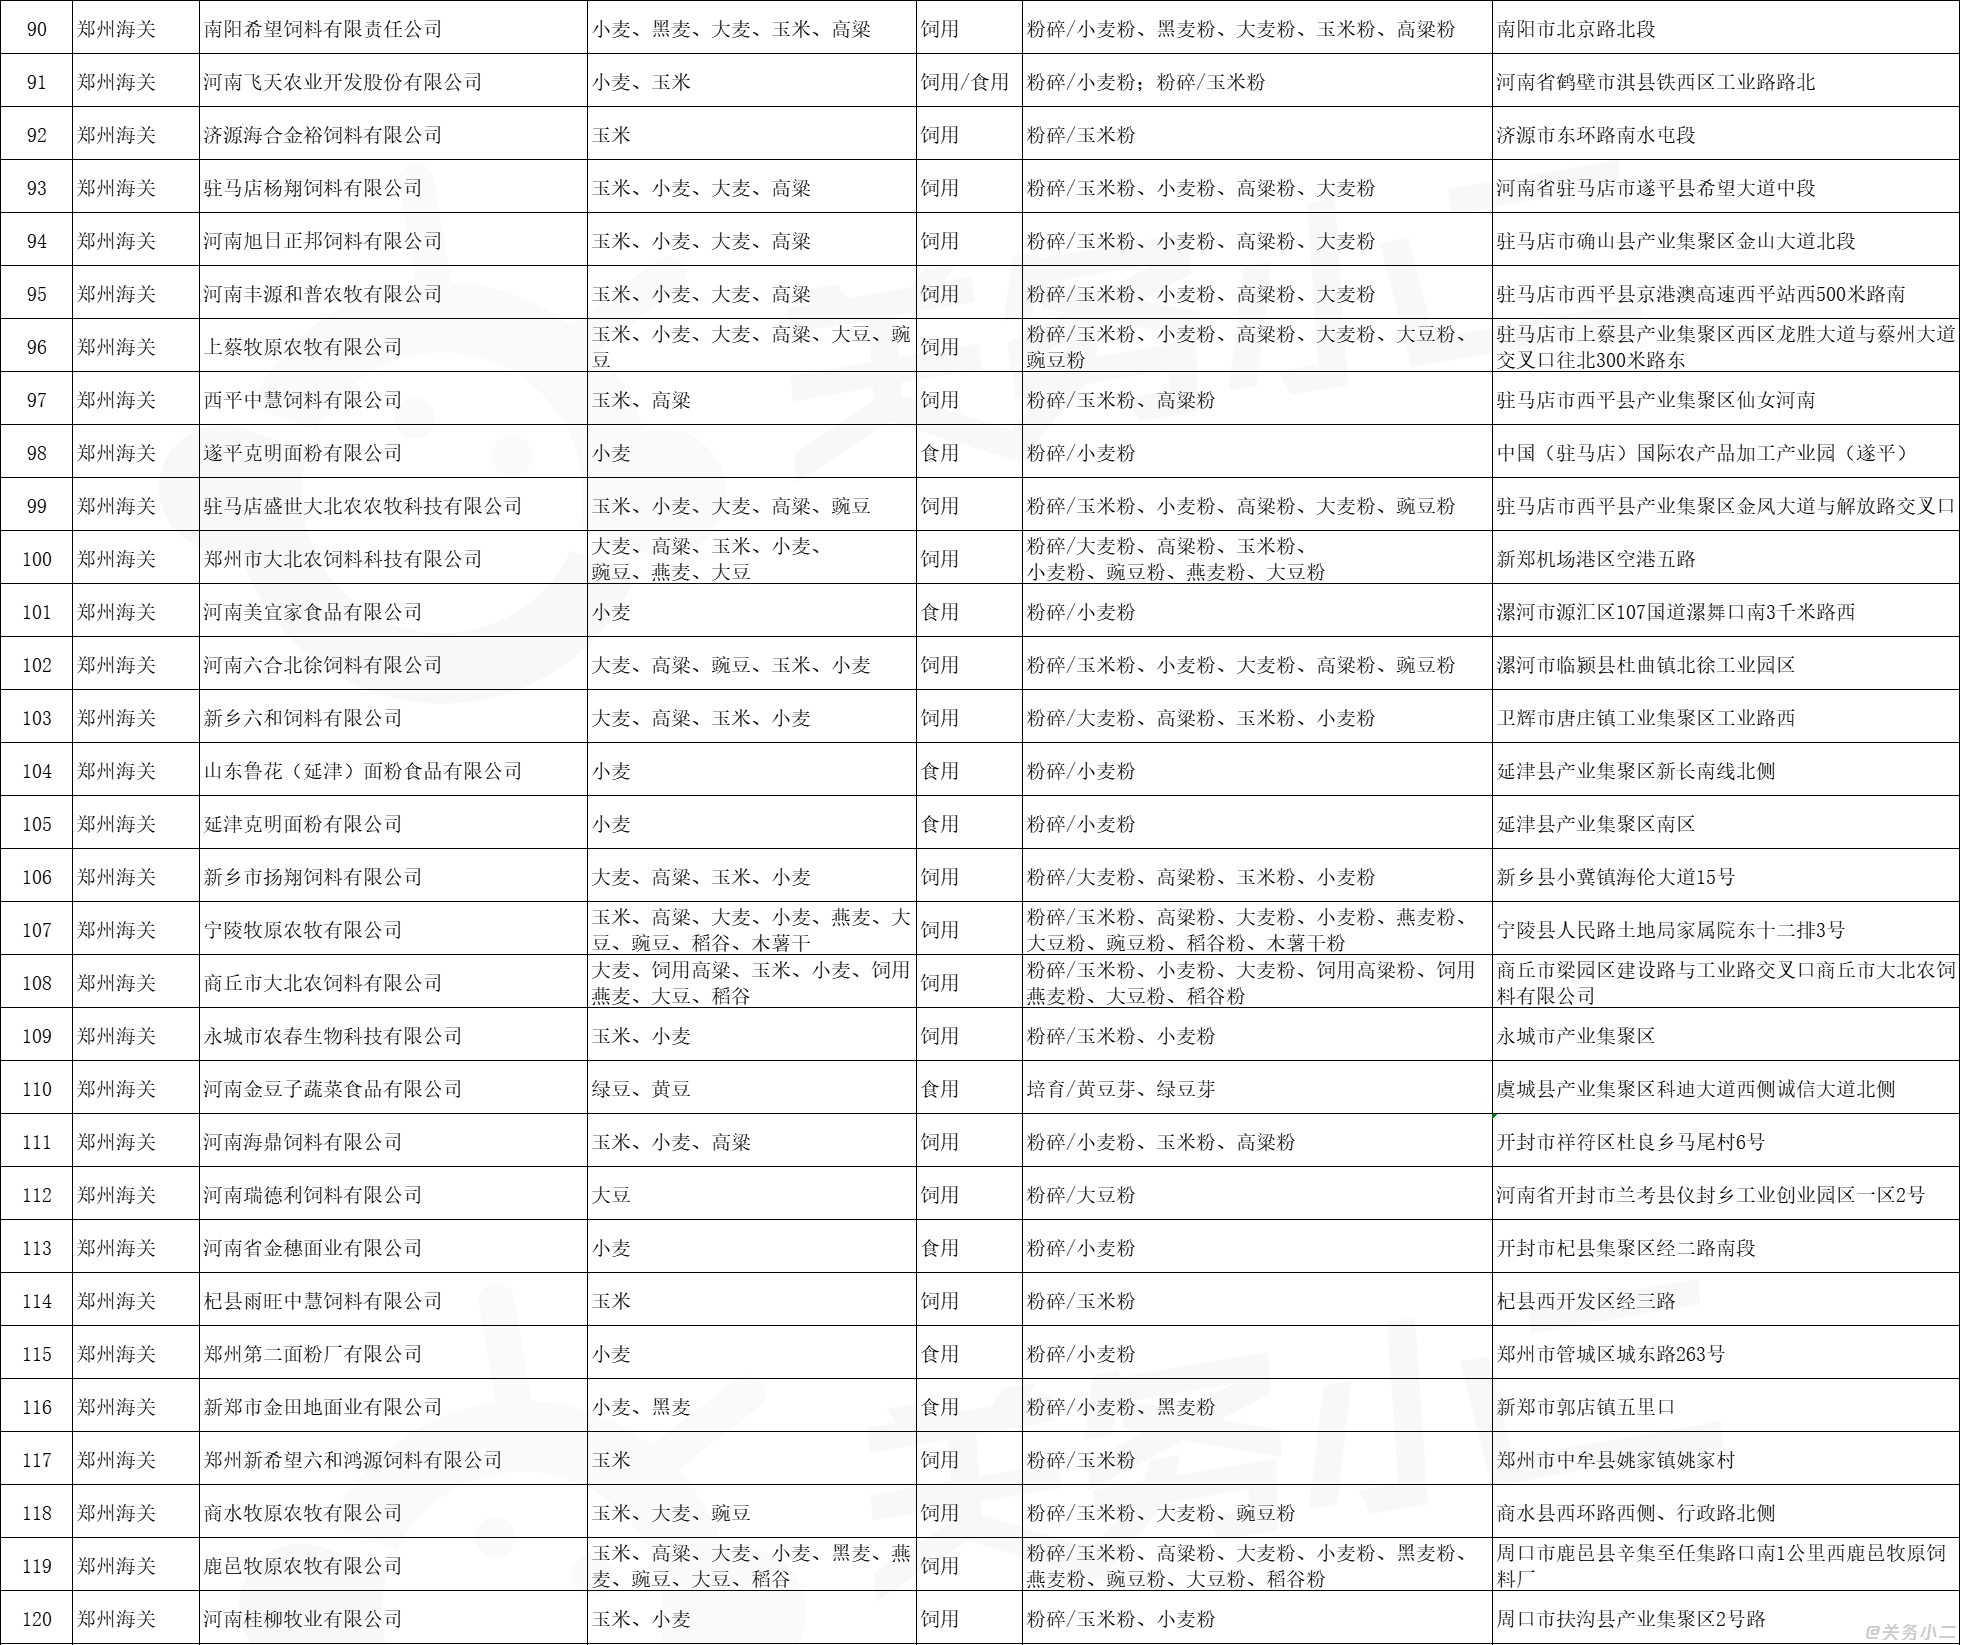 郑州海关指定进口粮食加工企业名单2_01.png